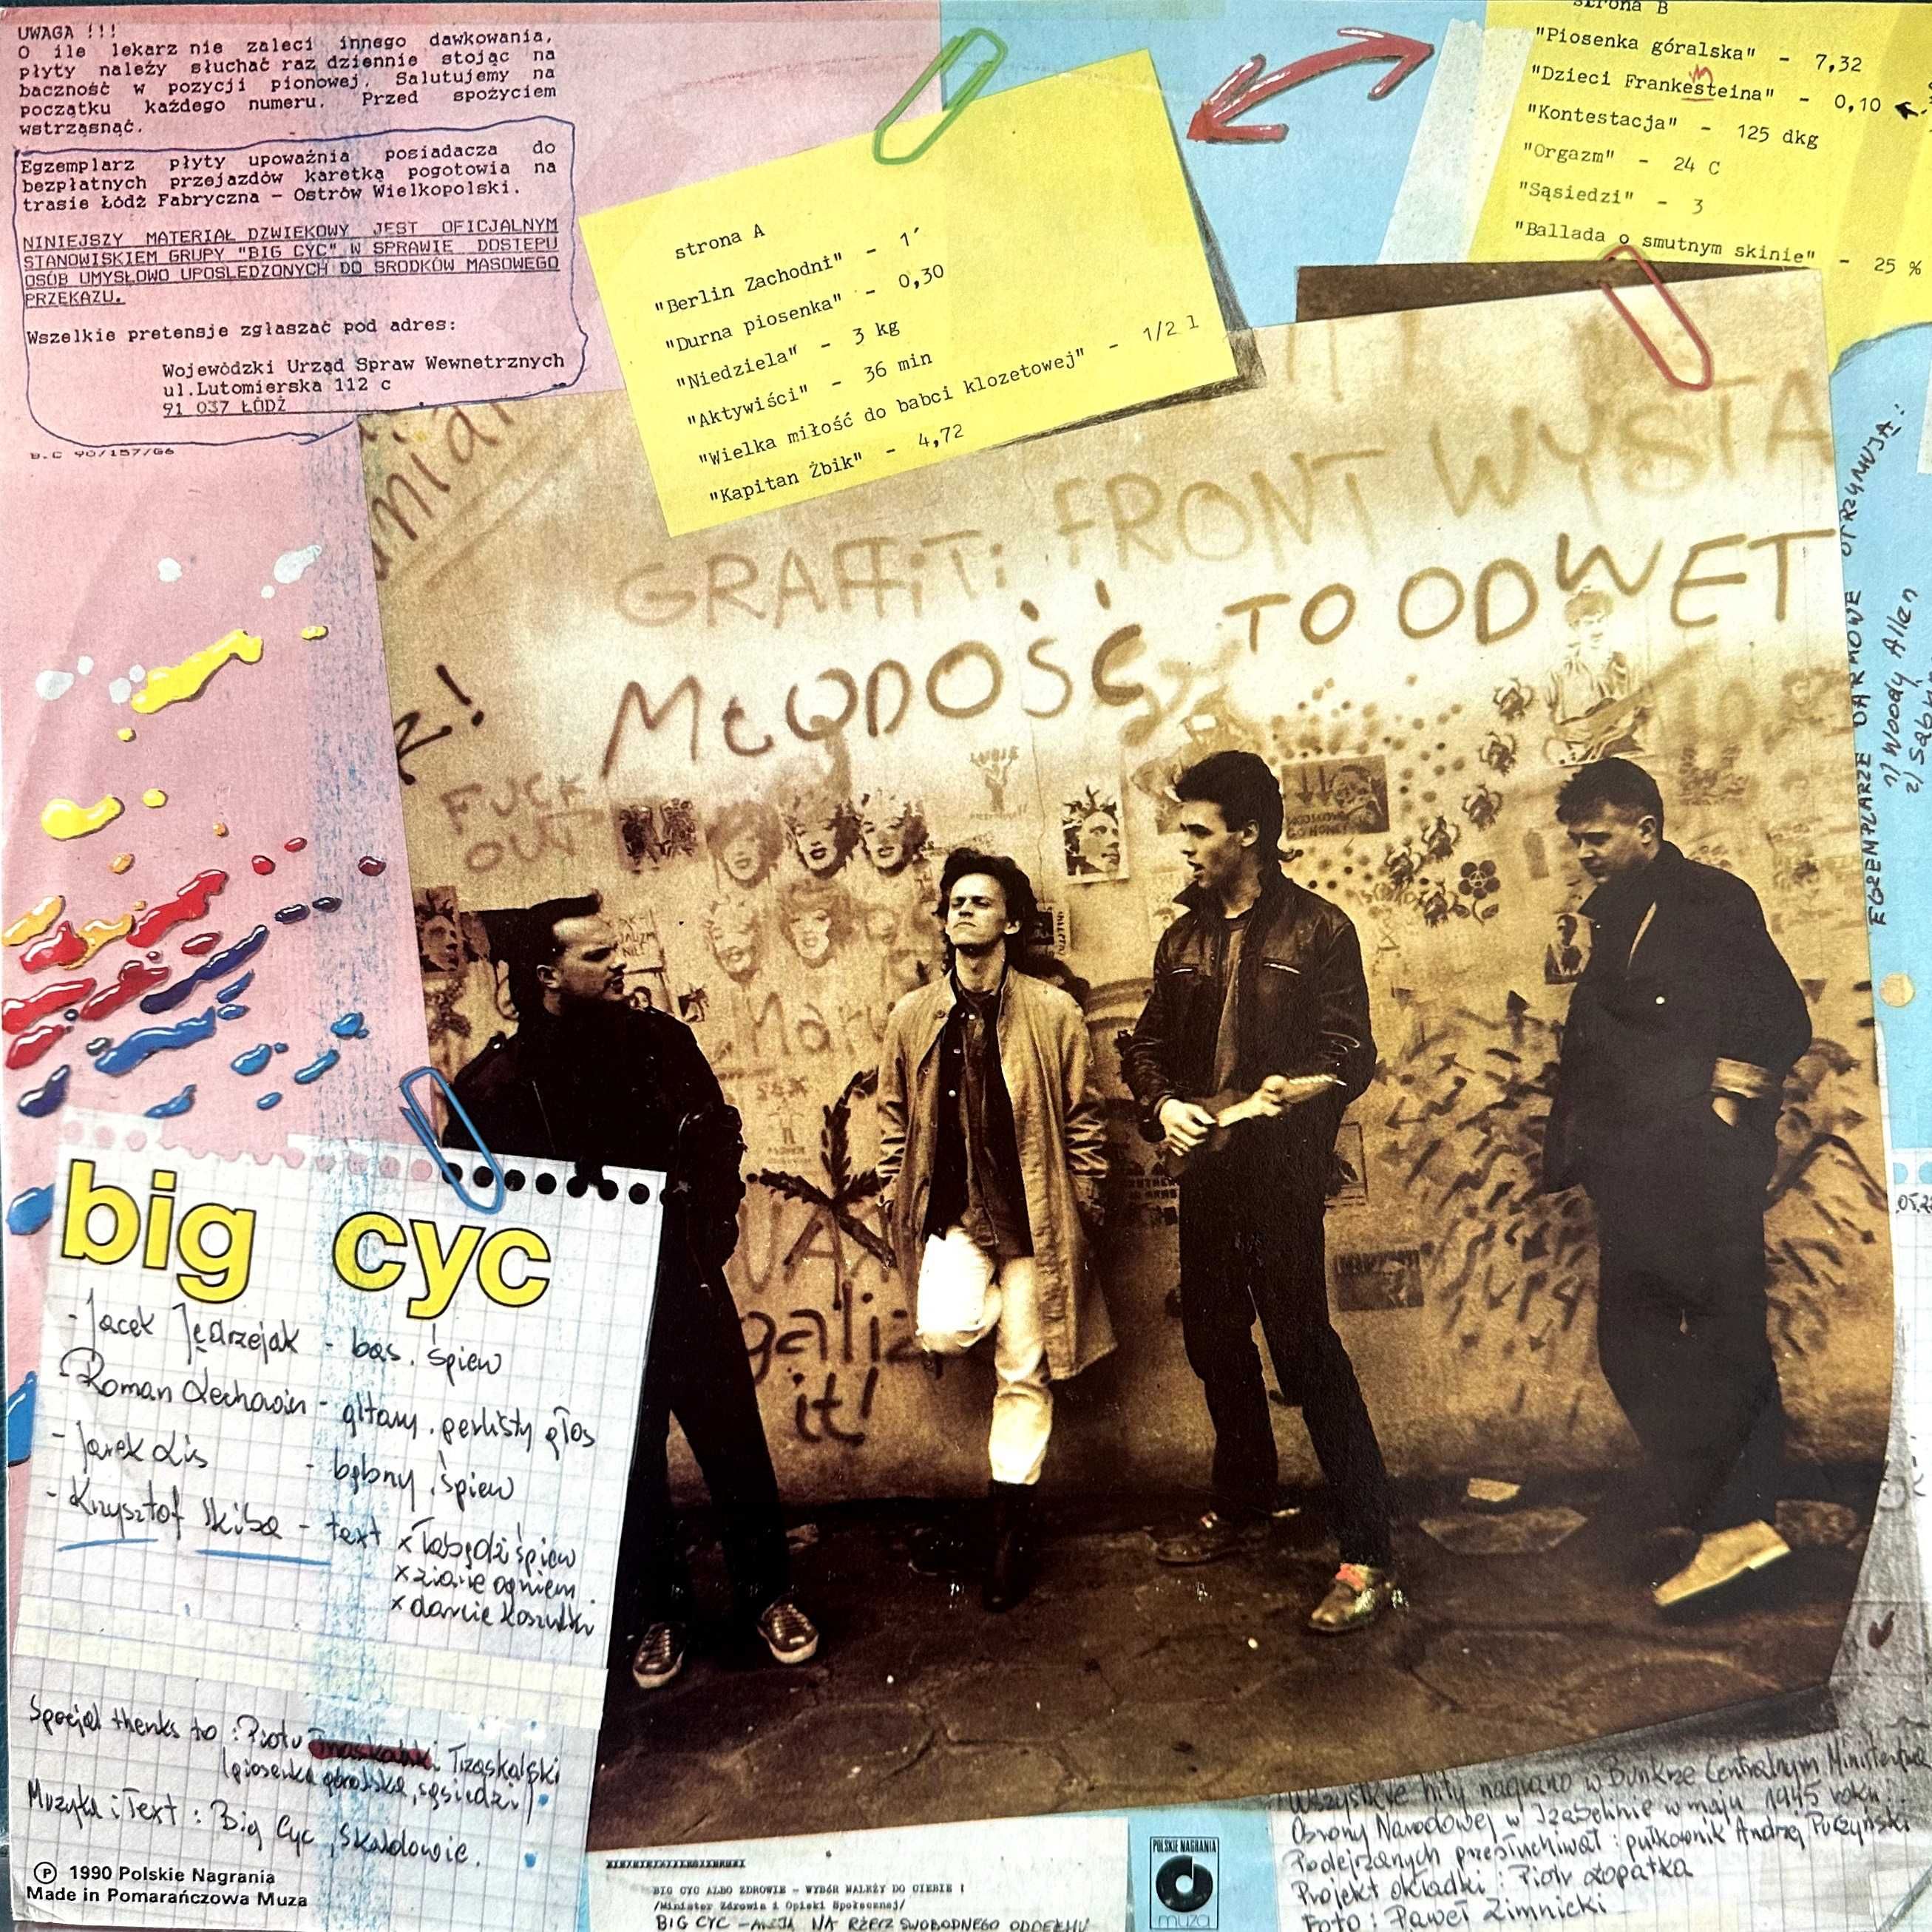 Big Cyc - Z Partyjnym Pozdrowieniem (Vinyl, 1990, Poland)